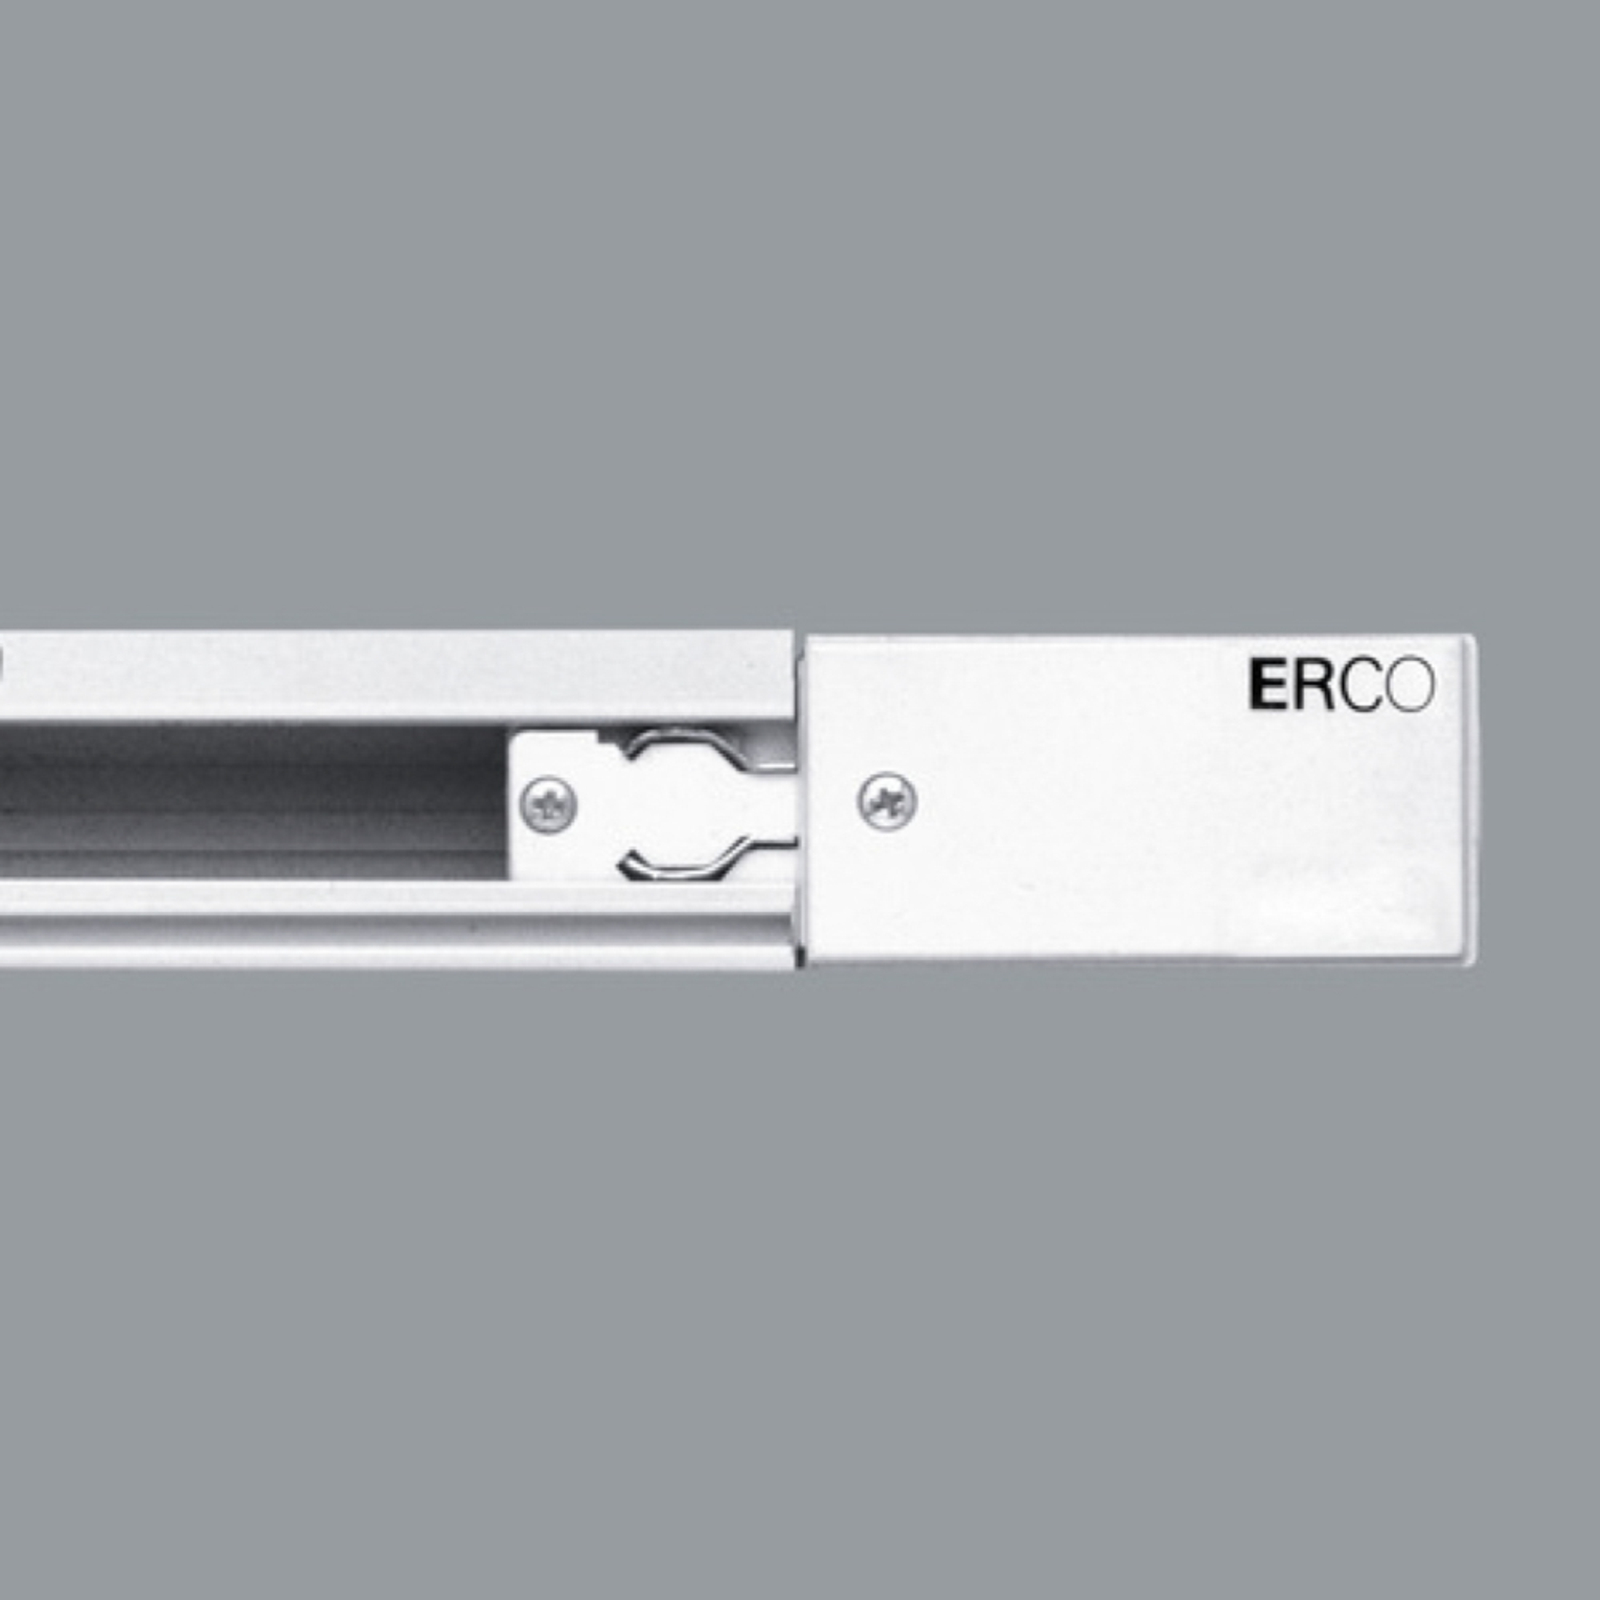 ERCO 3-fas-anslutning skyddsledare vänster vit